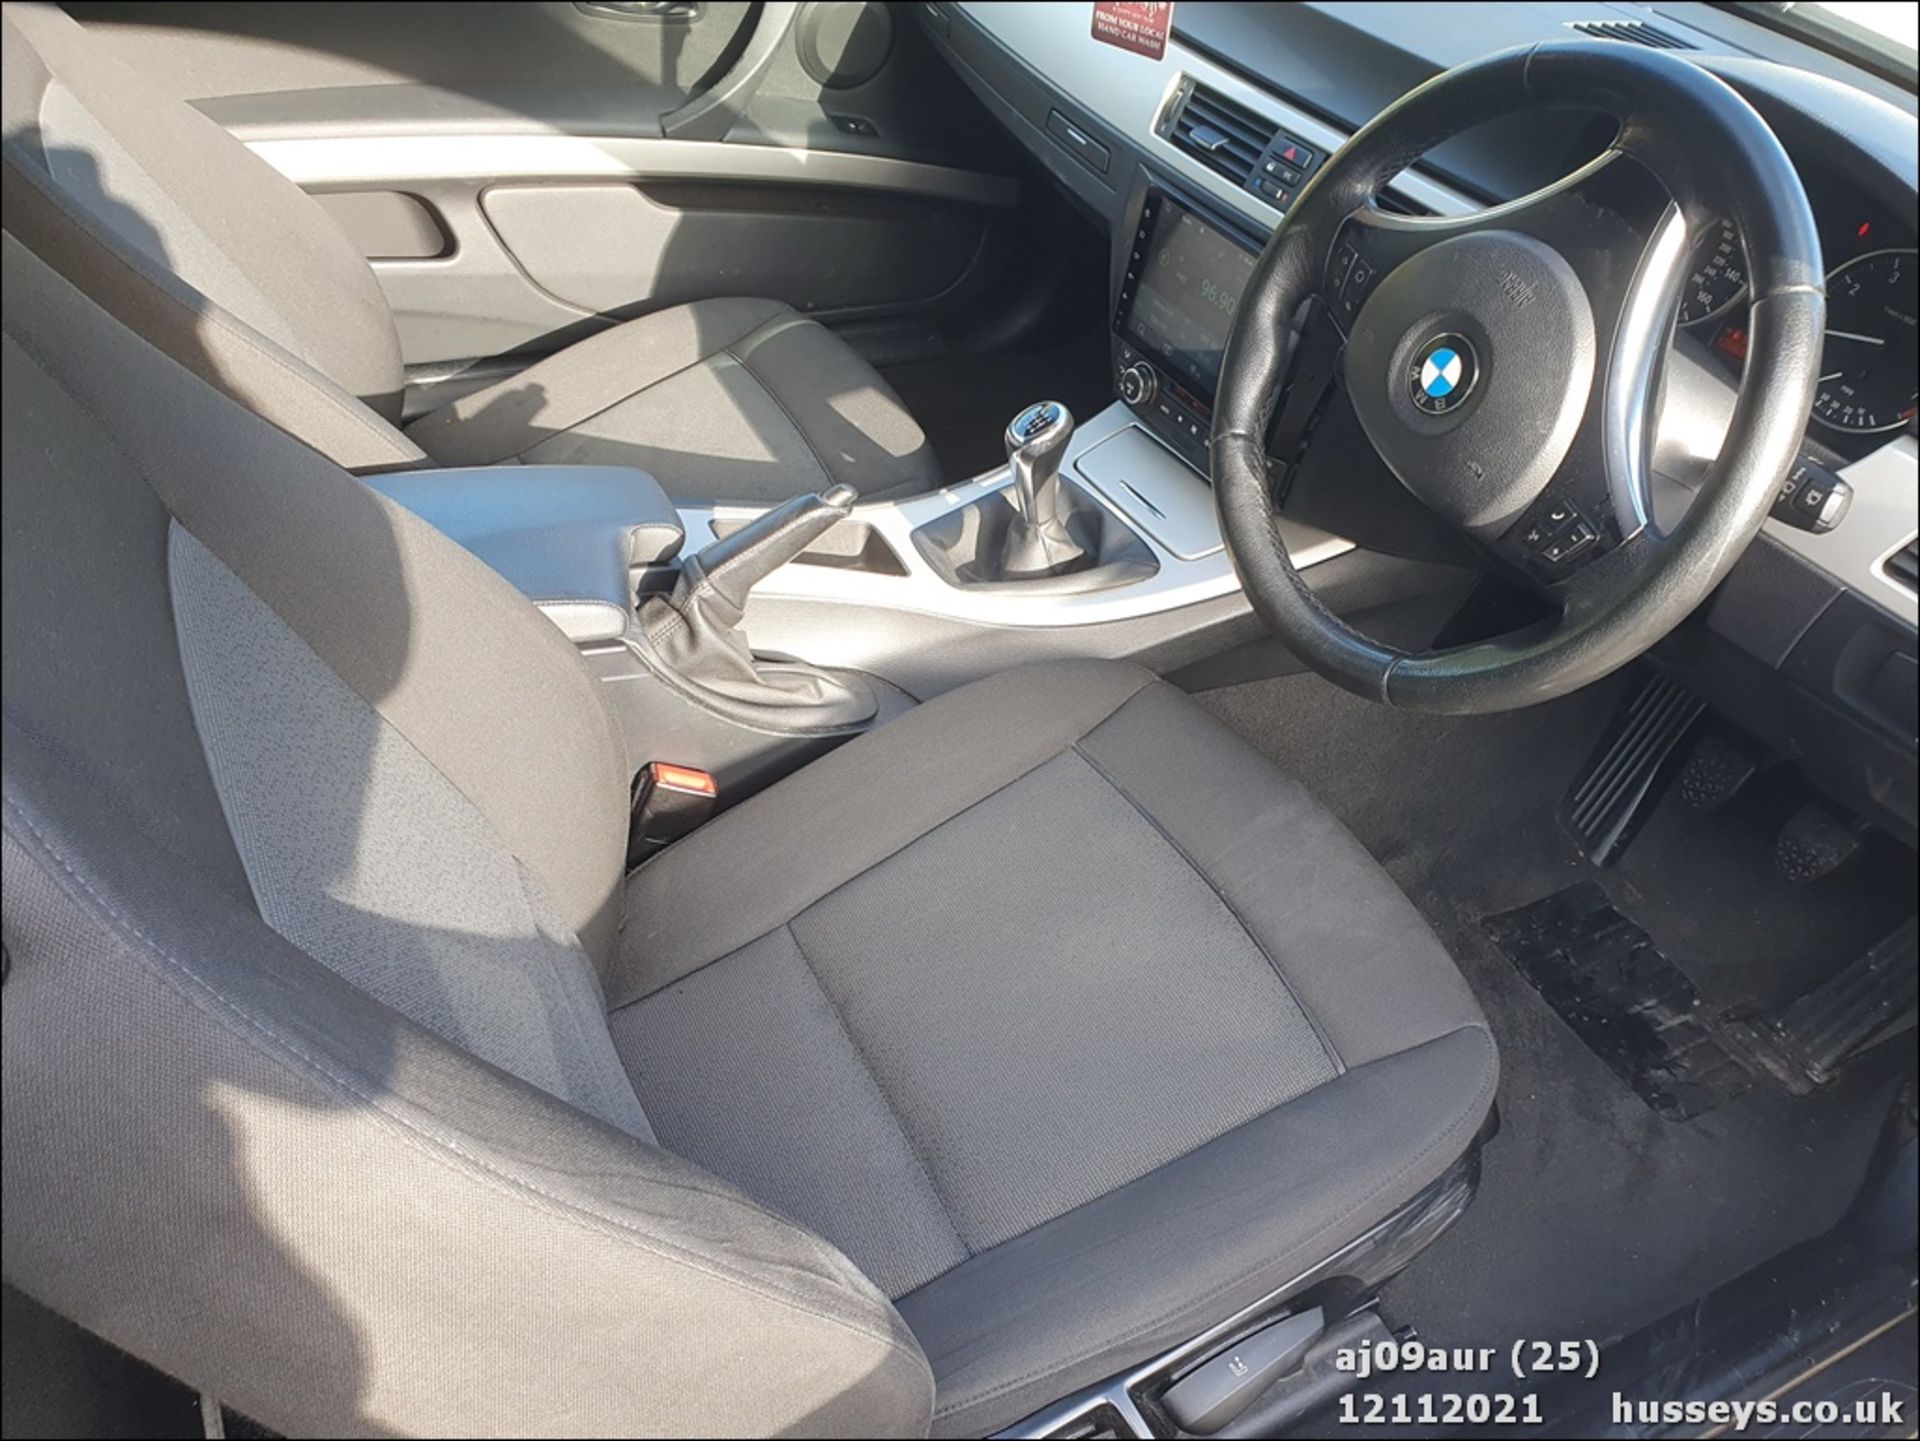 09/09 BMW 320I SE - 1995cc 2dr Coupe (Black, 125k) - Image 24 of 29